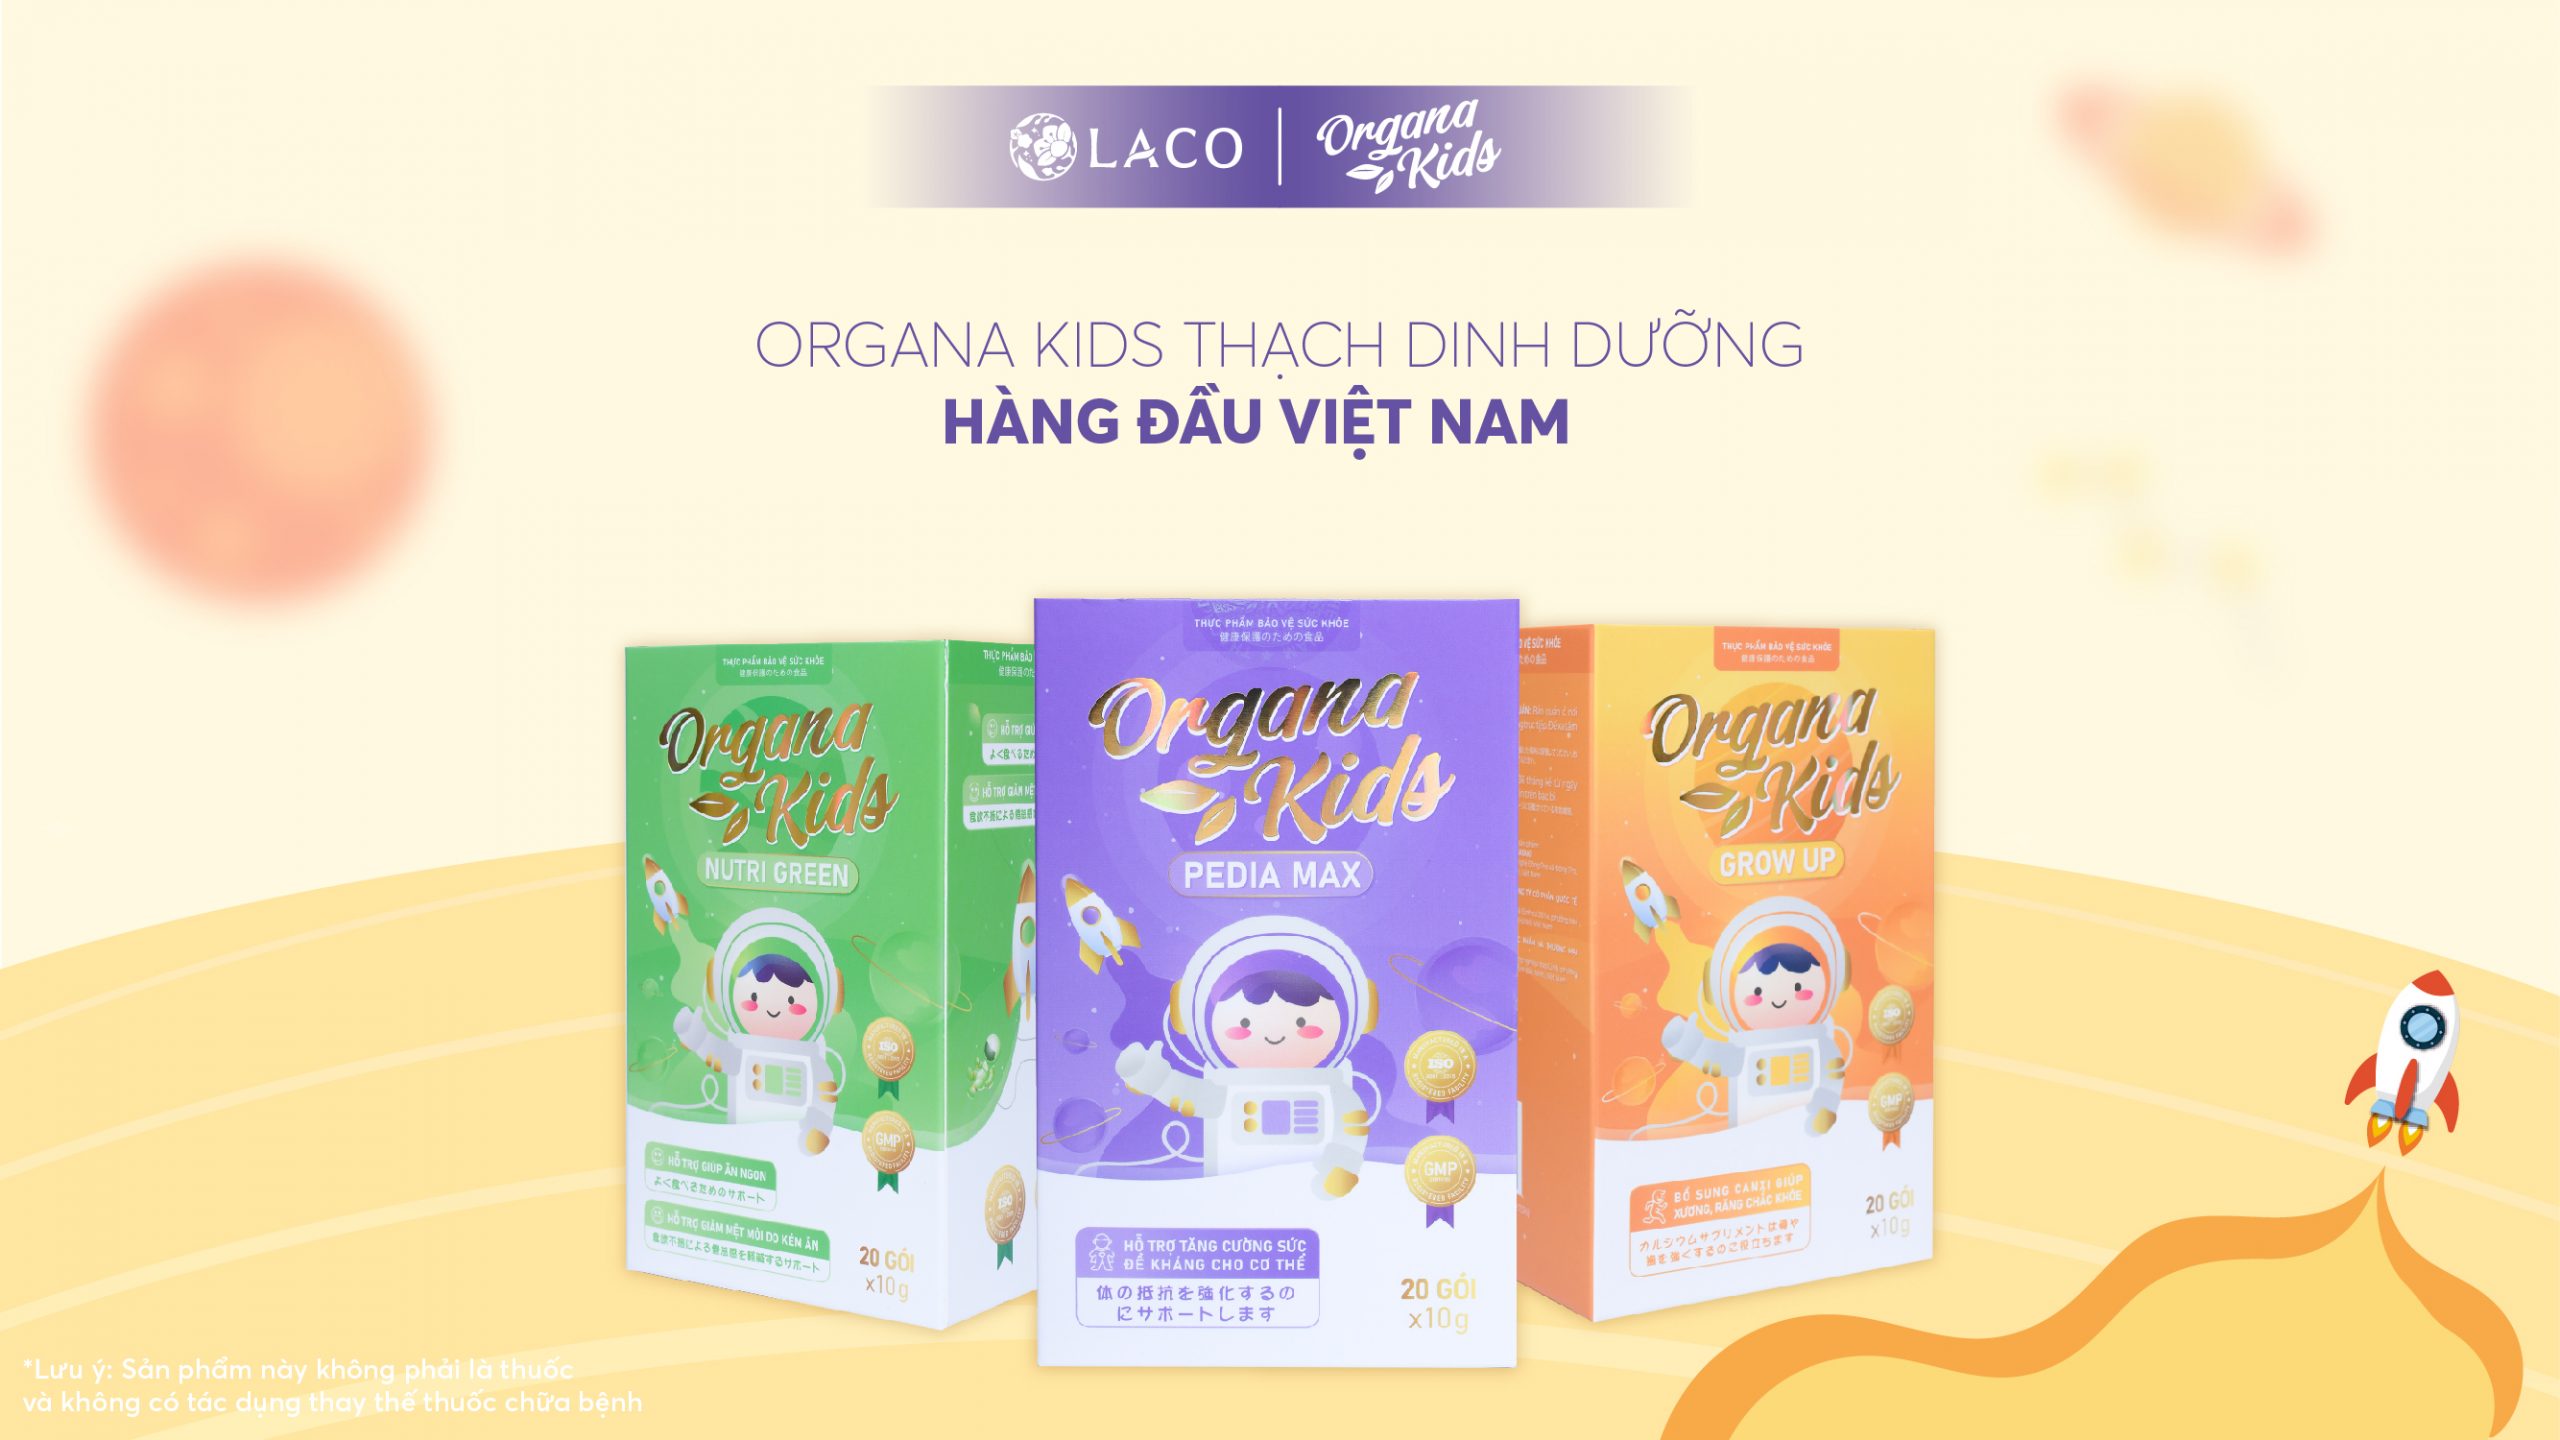 Ra mắt sản phẩm mới Organa Kids – Thạch dinh dưỡng trẻ em